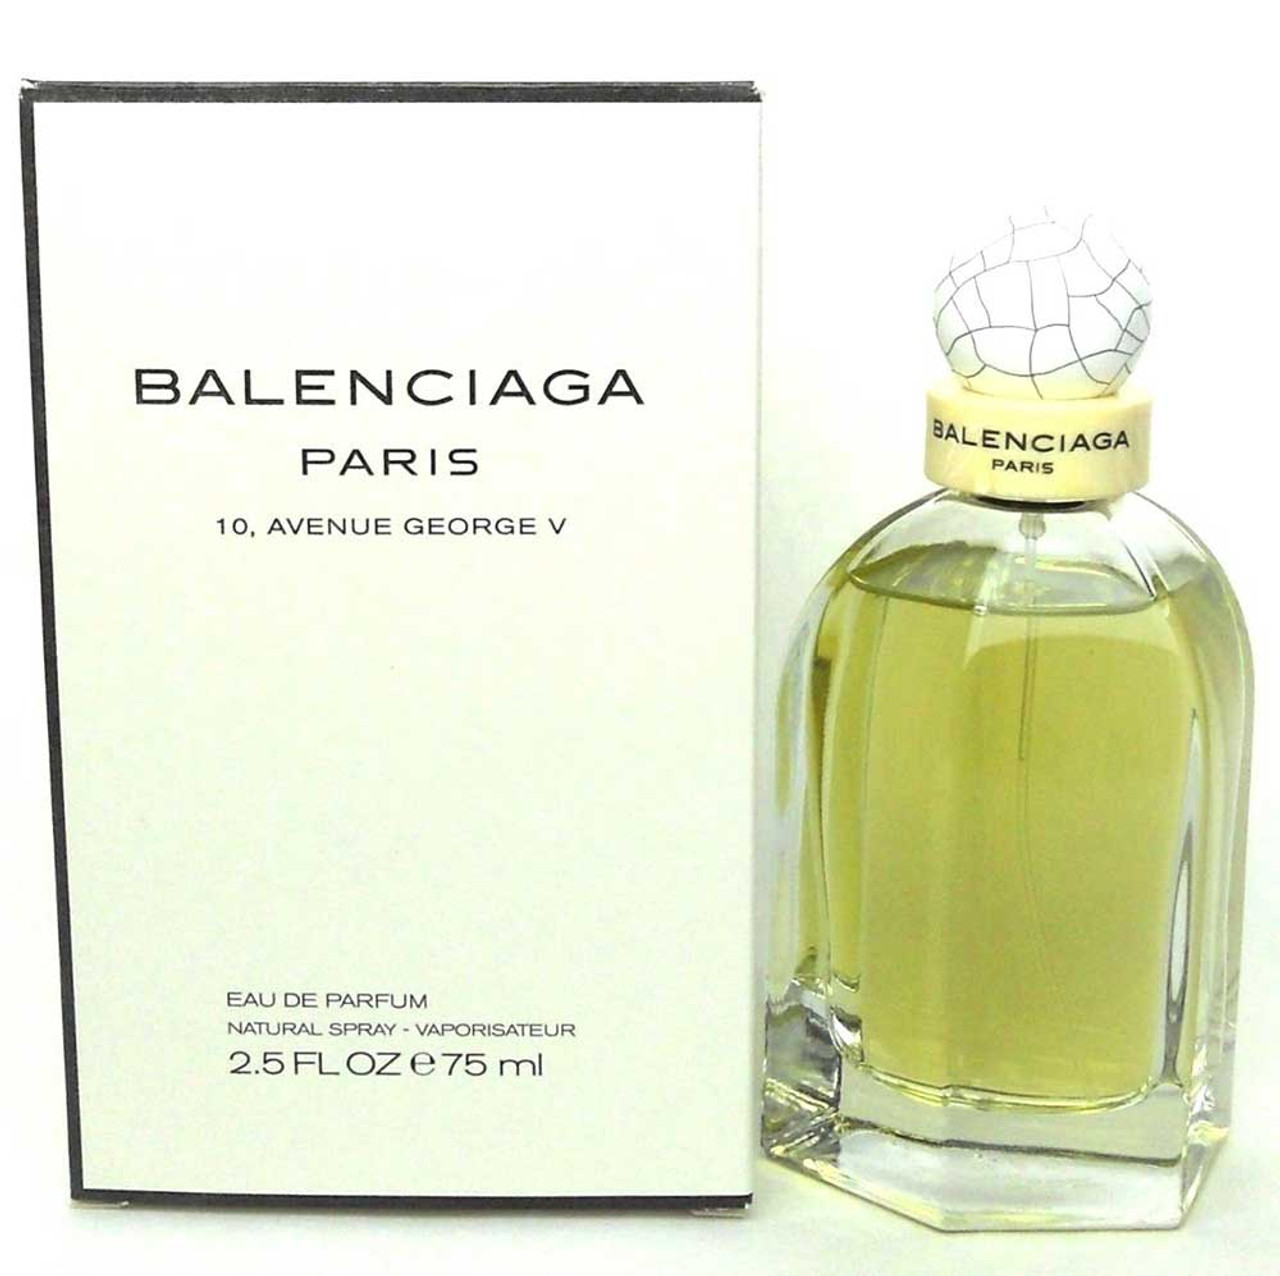 Balenciaga Paris 10.Avenue George V Eau De Parfum 2.5 - NotJustPerfume.com